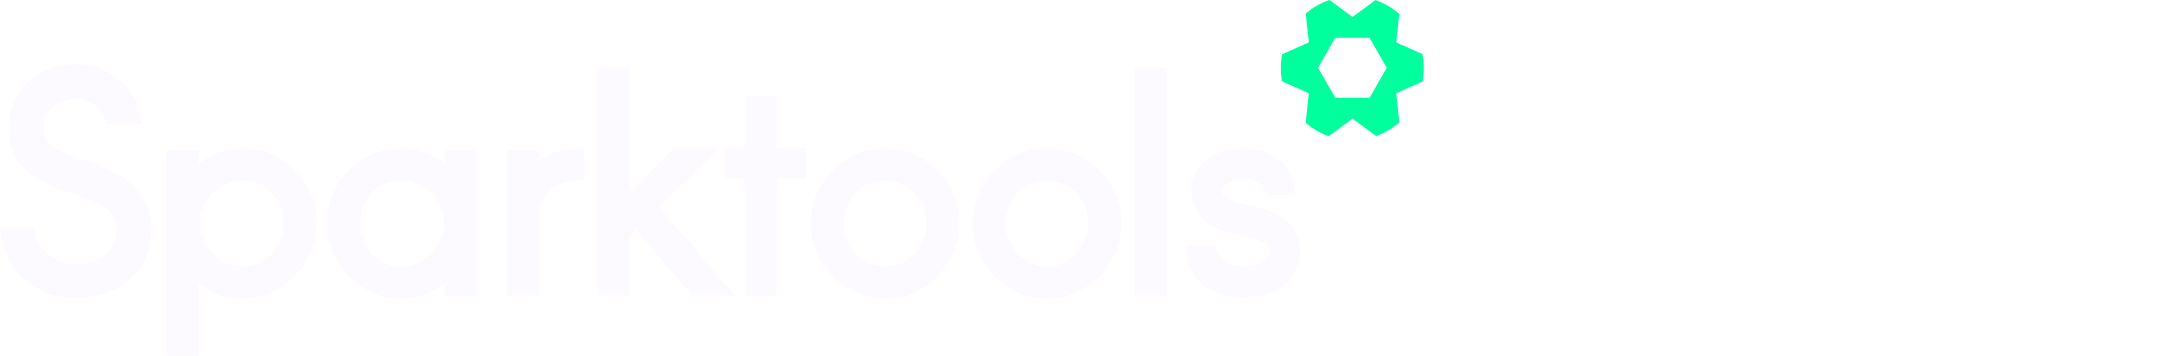 Sparktools logo